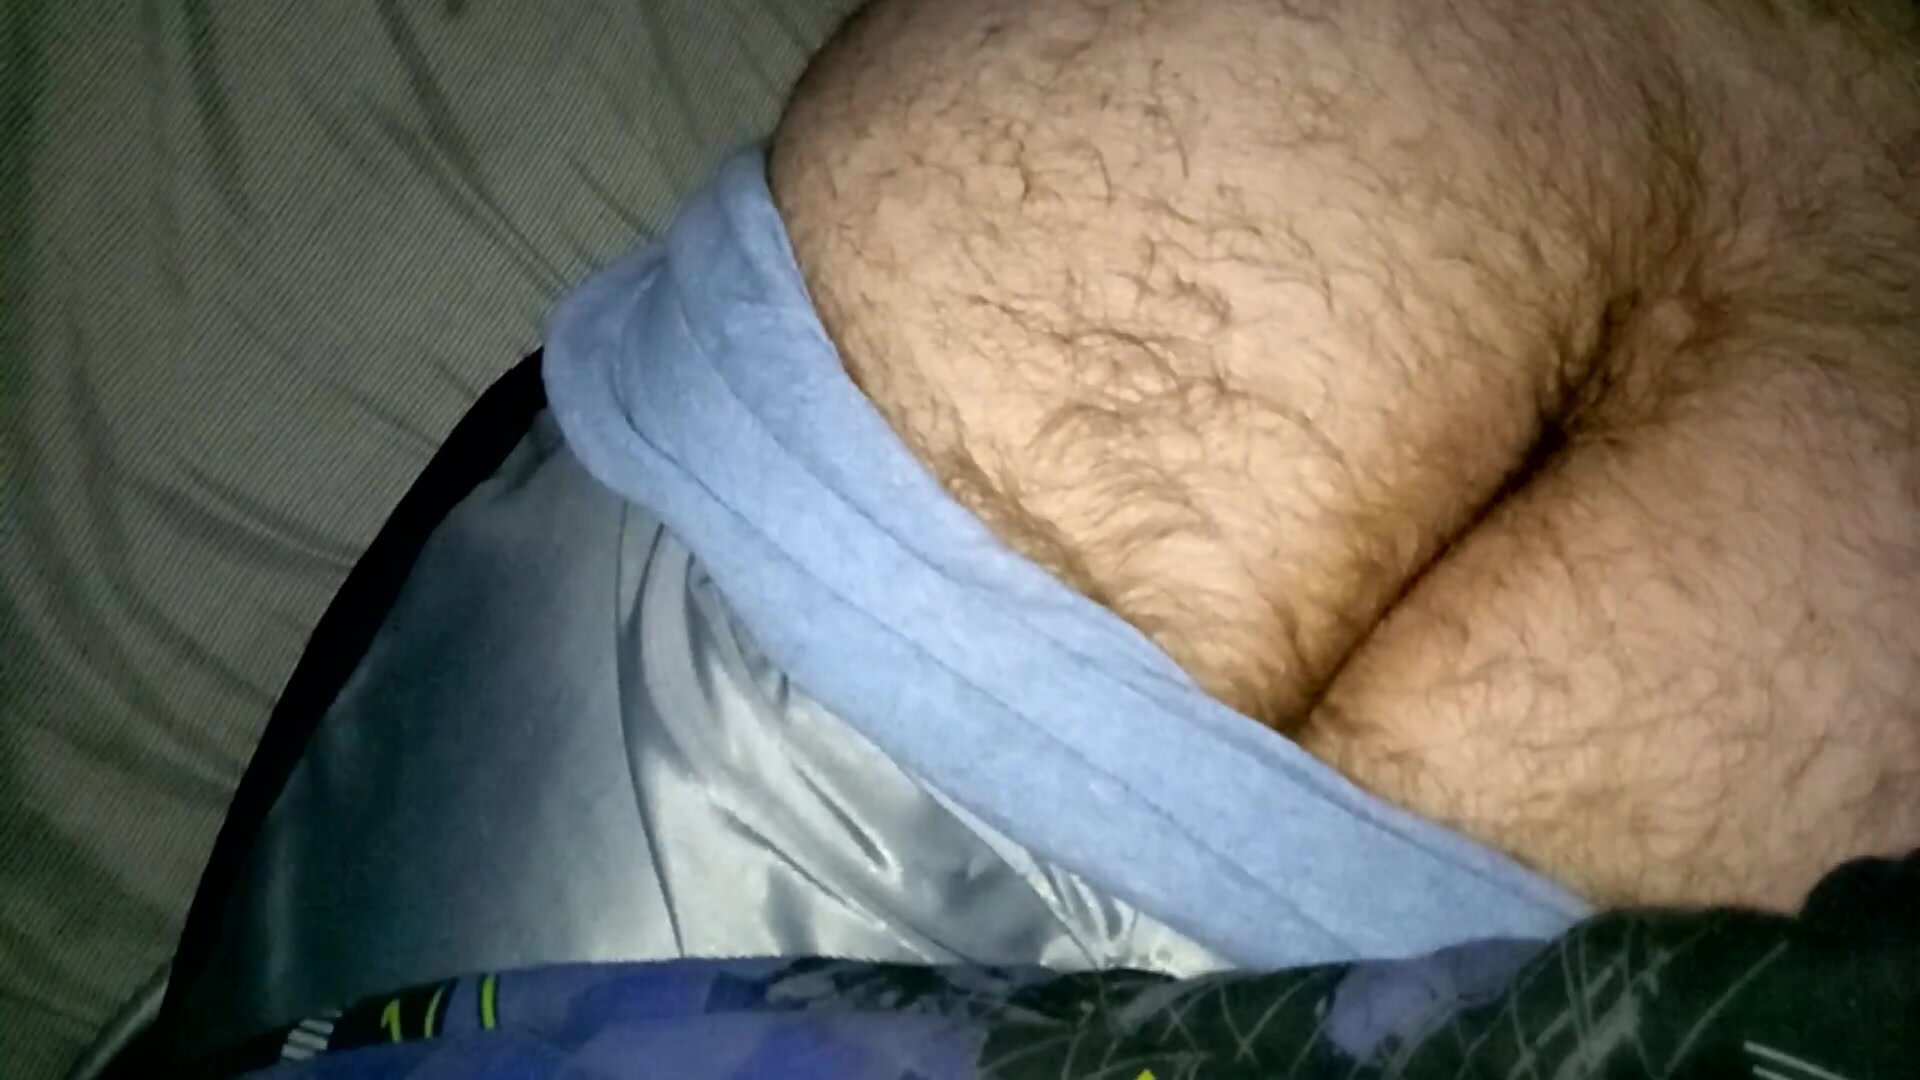 Fat Sleeping Porn - Sleep, force: Cum on sleeping boyfriend's fatâ€¦ ThisVid.com